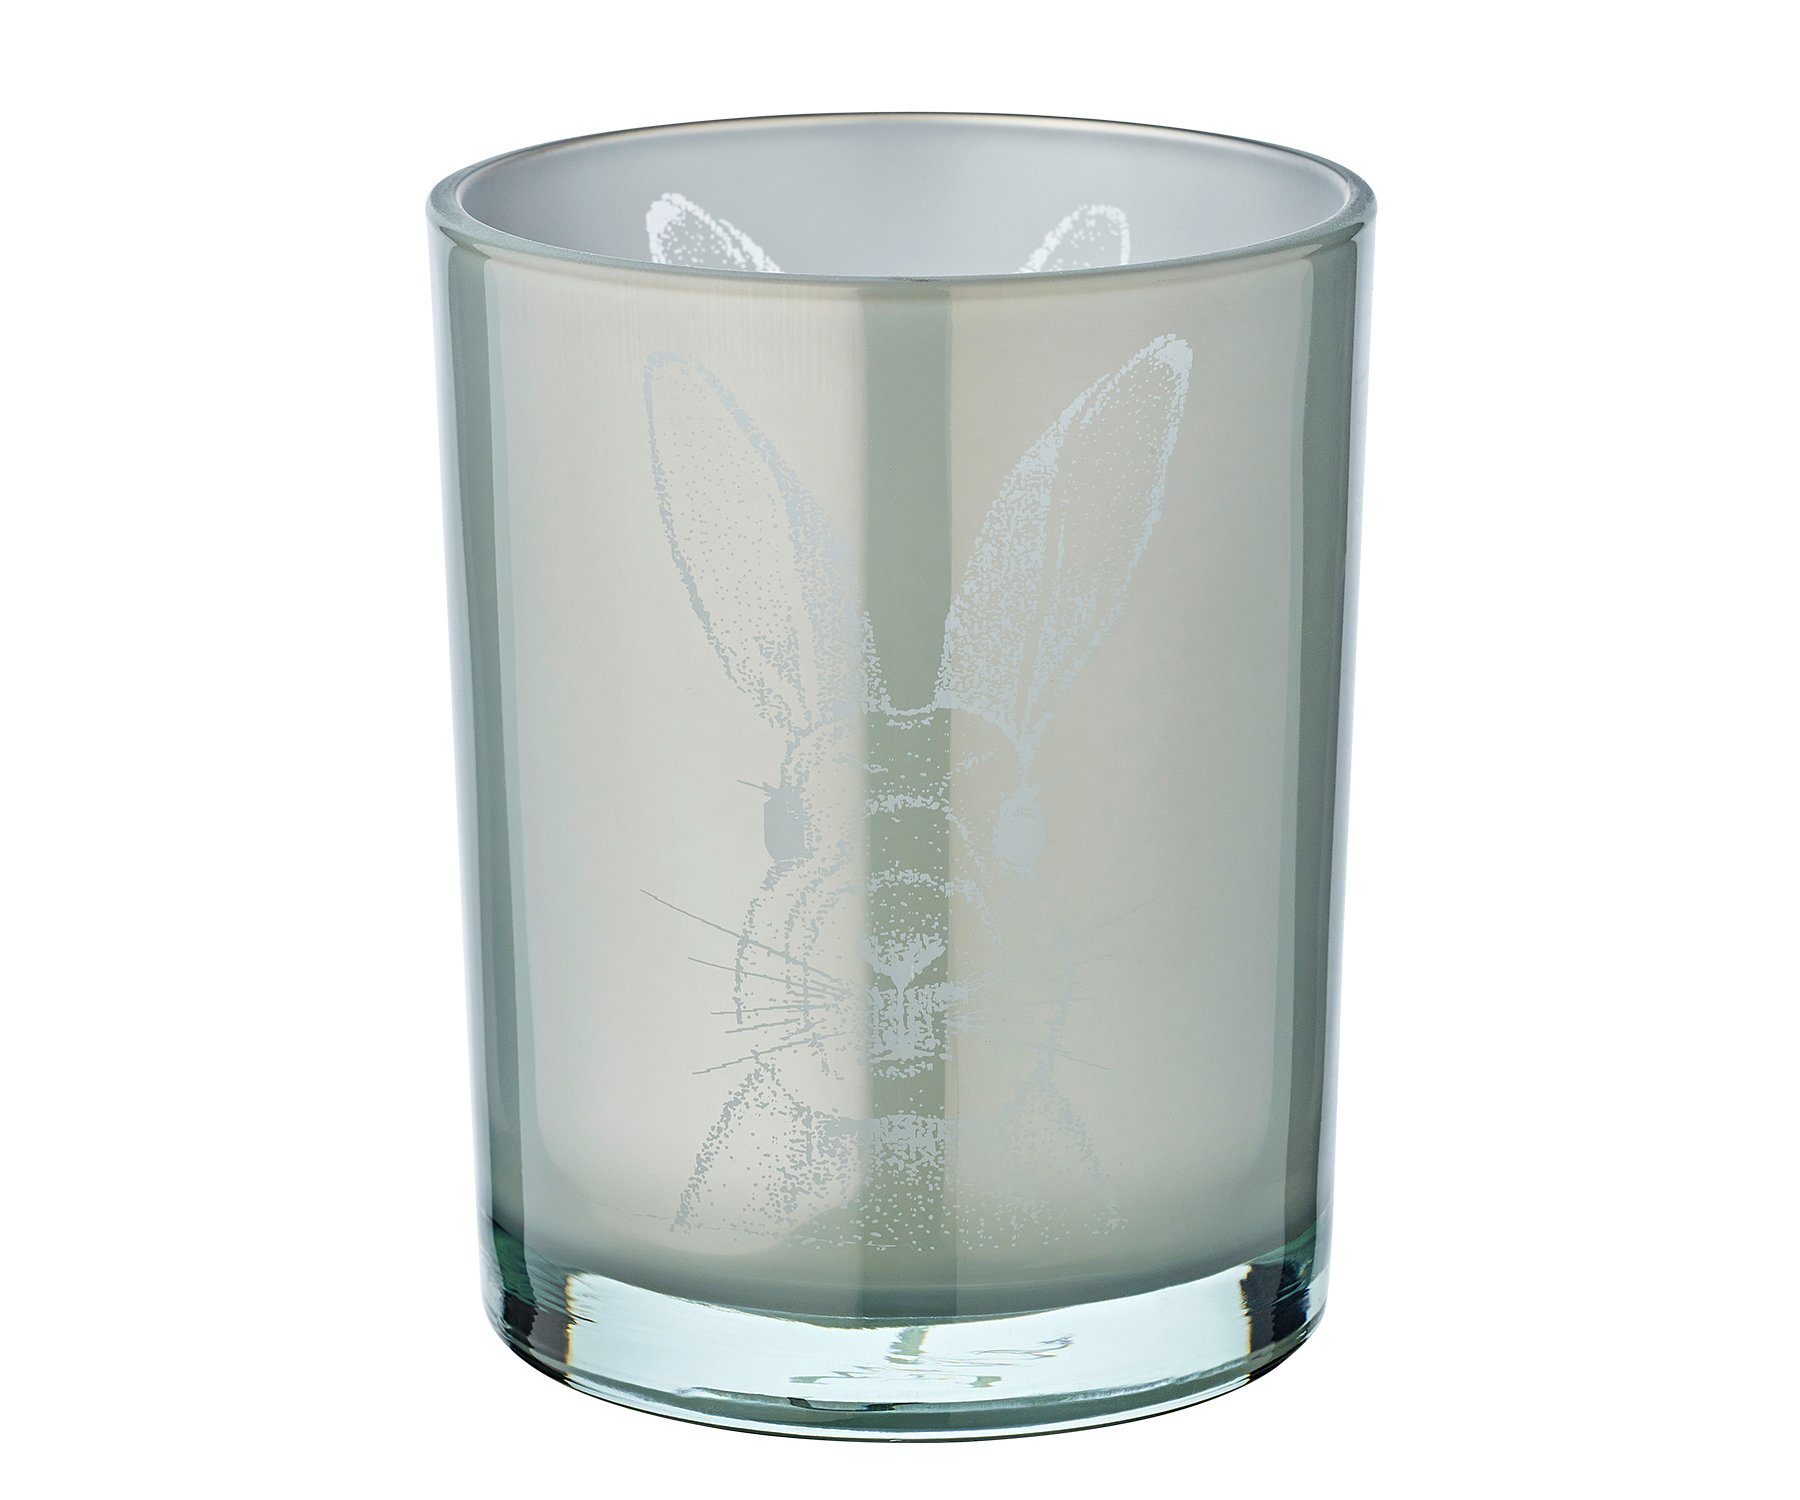 EDZARD Windlicht Hase, Windlicht, Kerzenglas cm in Teelichter, 13 cm, Grau-Optik, 10 Ø mit Höhe für Hasen-Motiv Teelichtglas